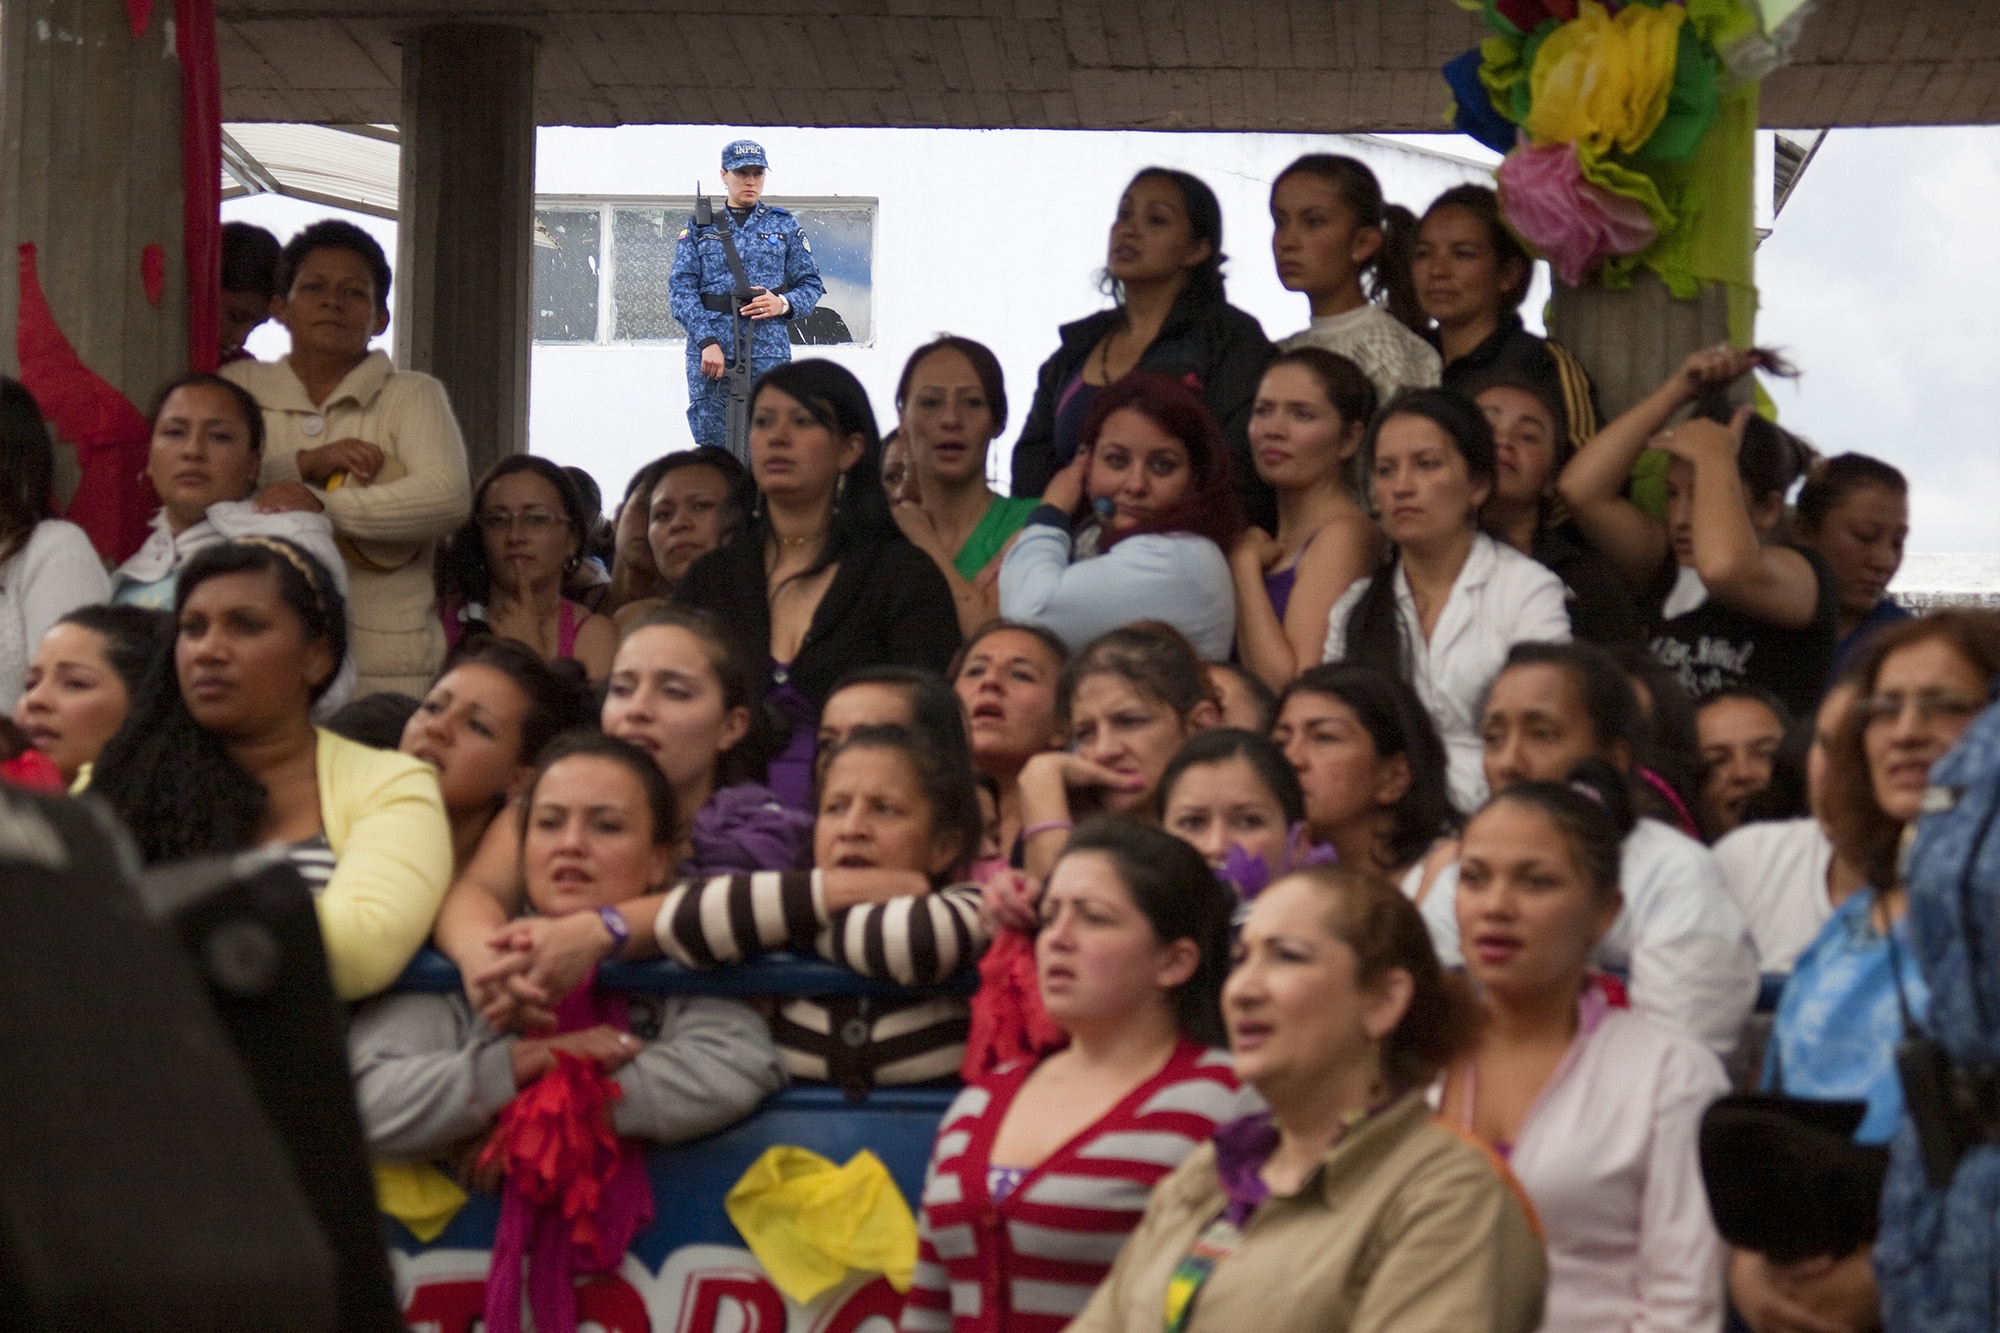 Beauty Contest in "El Buen Pastor" Jail - 